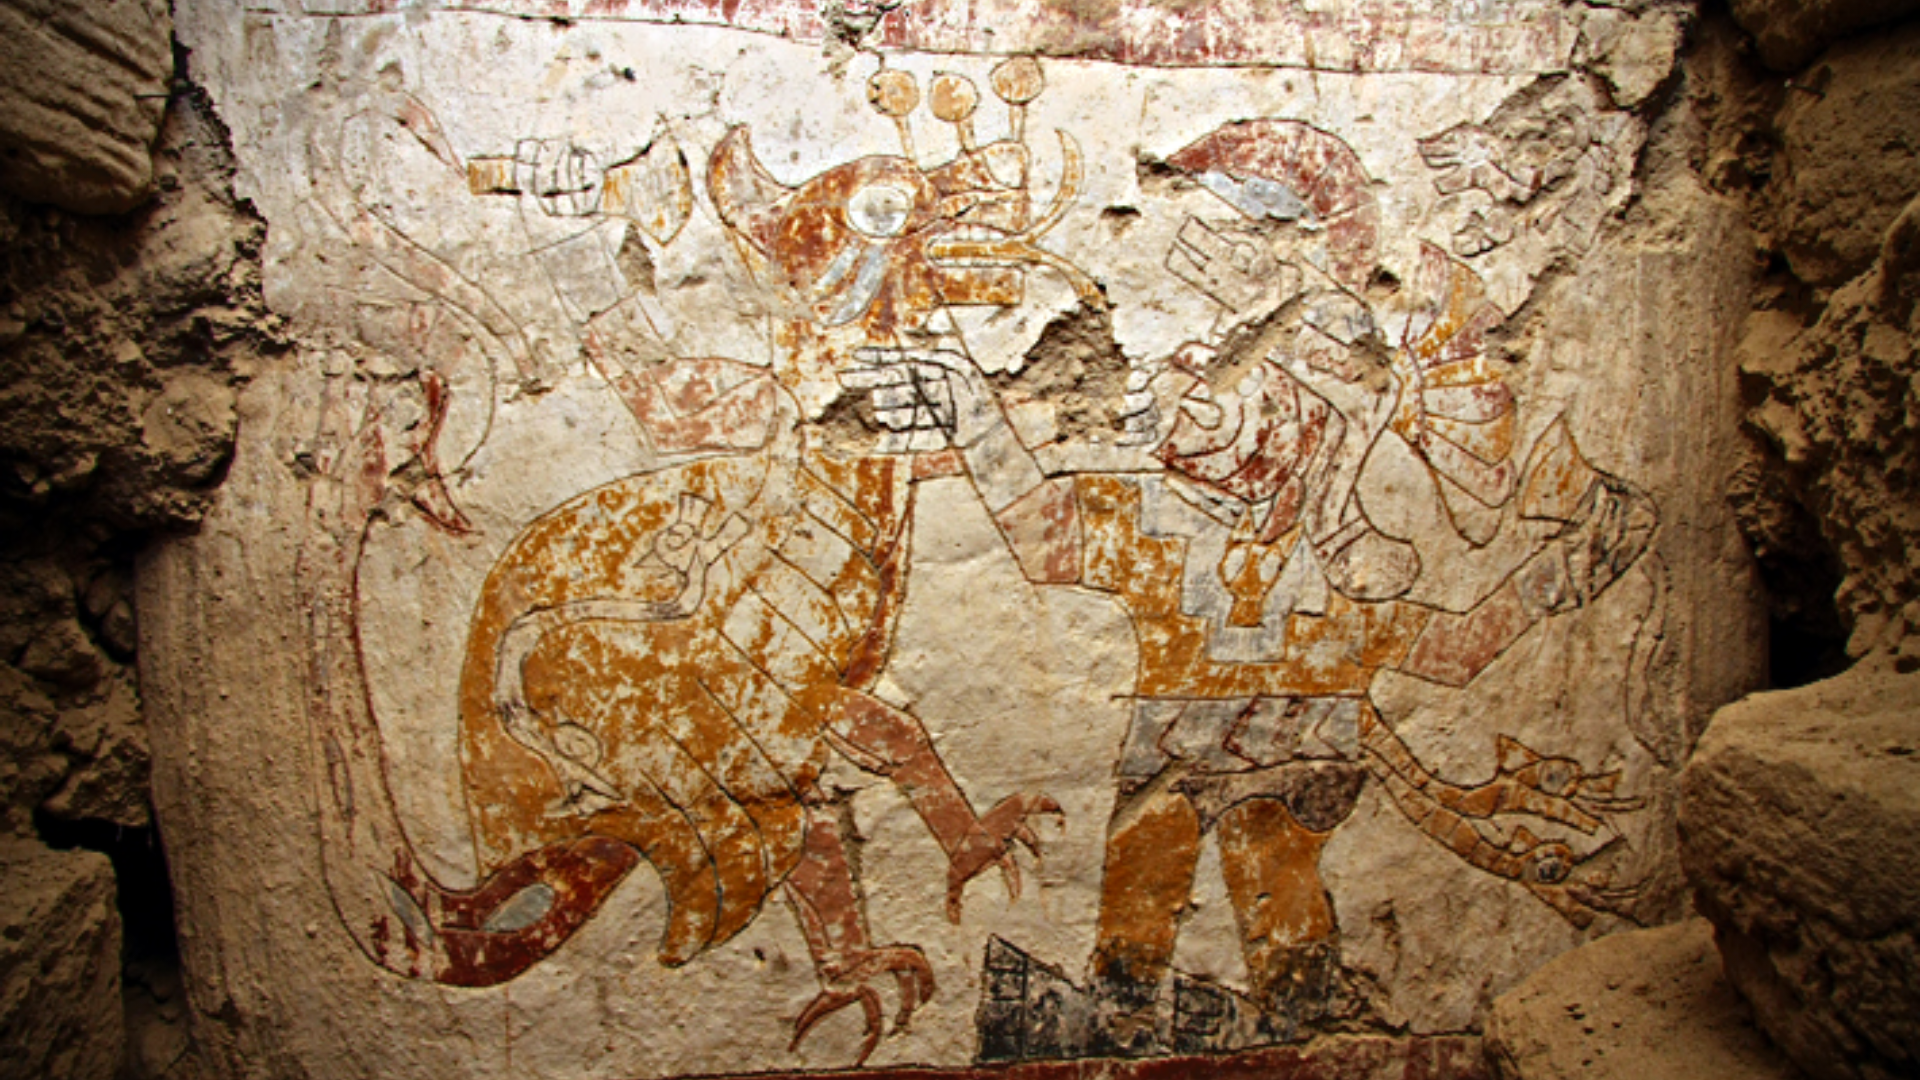 Descubren murales mochica de 1400 años de antigüedad que serían parte de un recinto sagrado para rituales de sacrificios